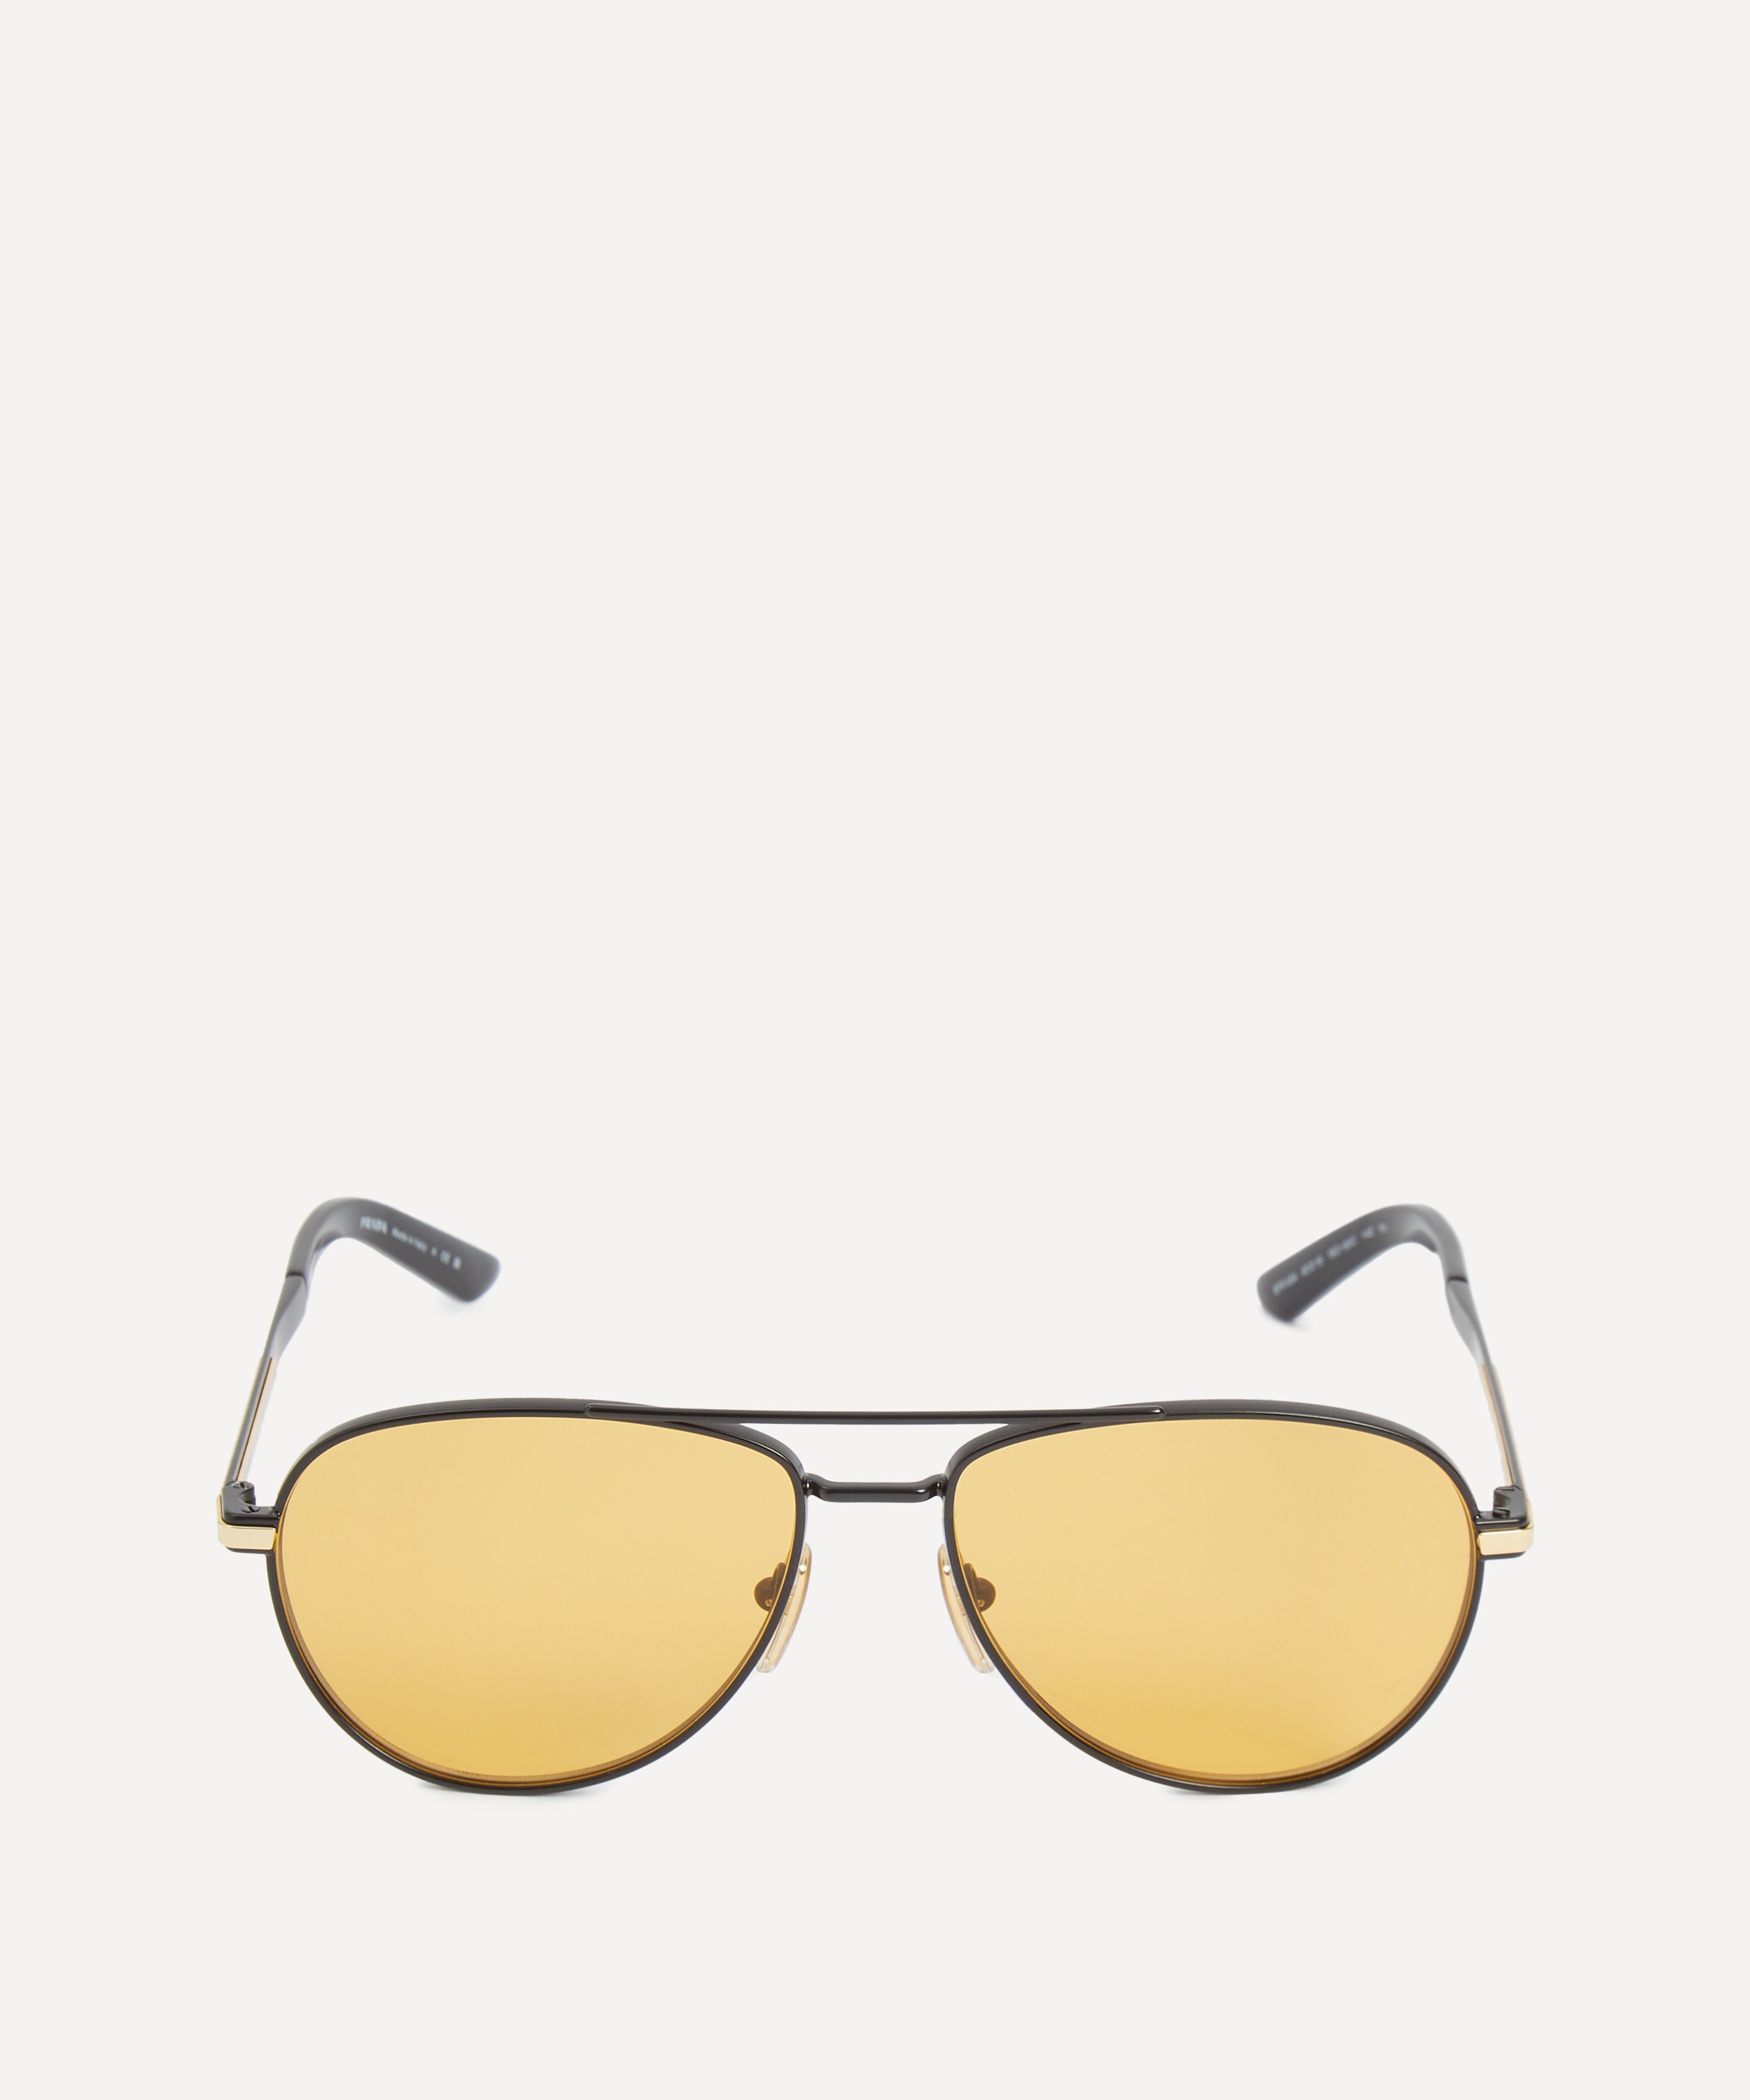 Prada - Aviator Sunglasses